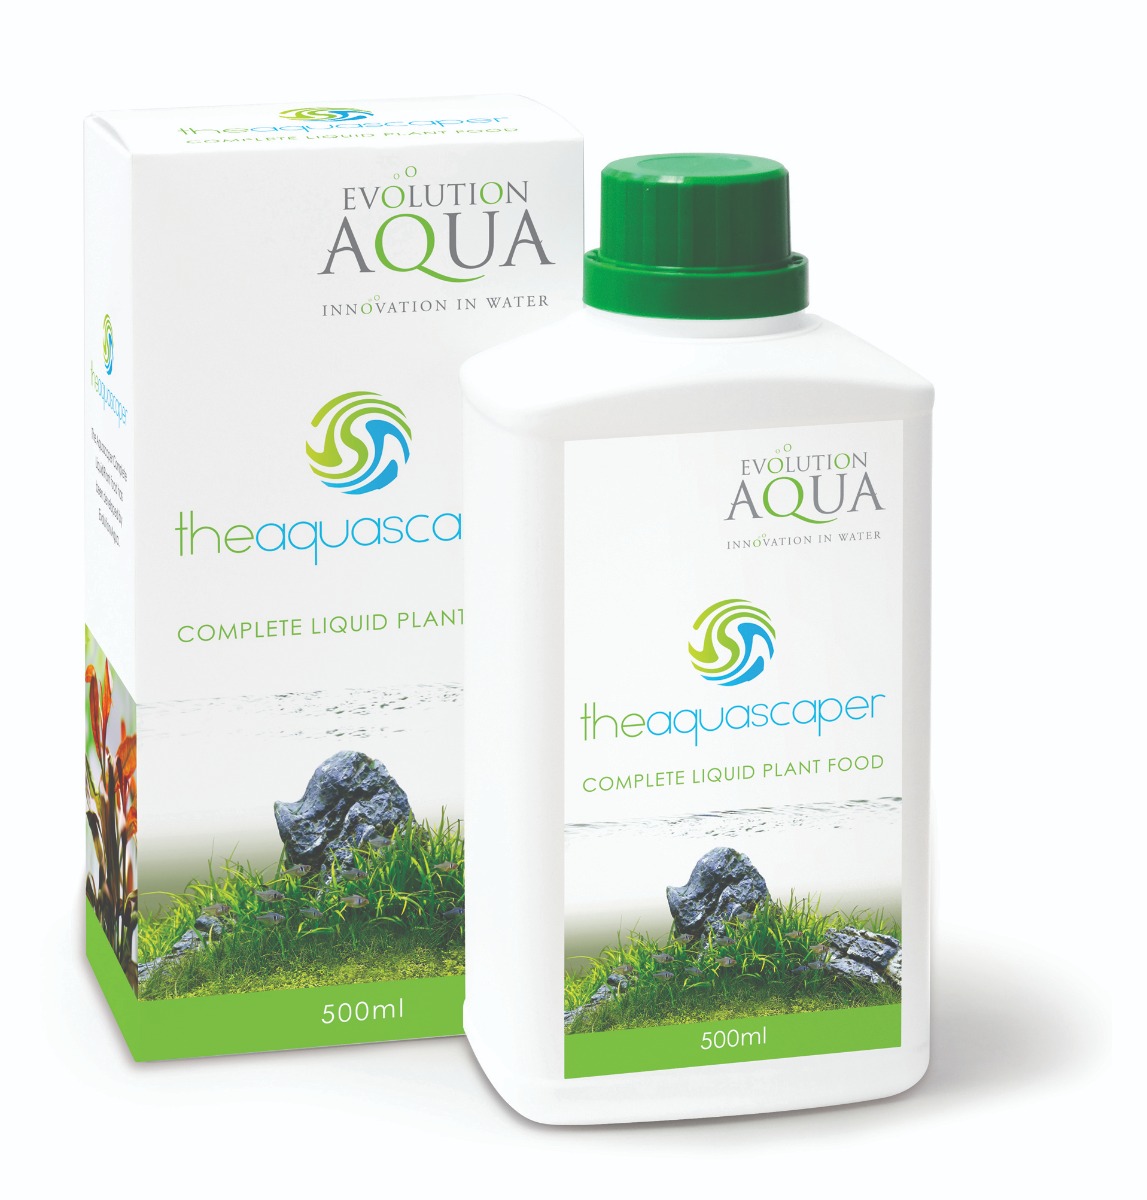 theAquascaper Complete Liquid Plant Food